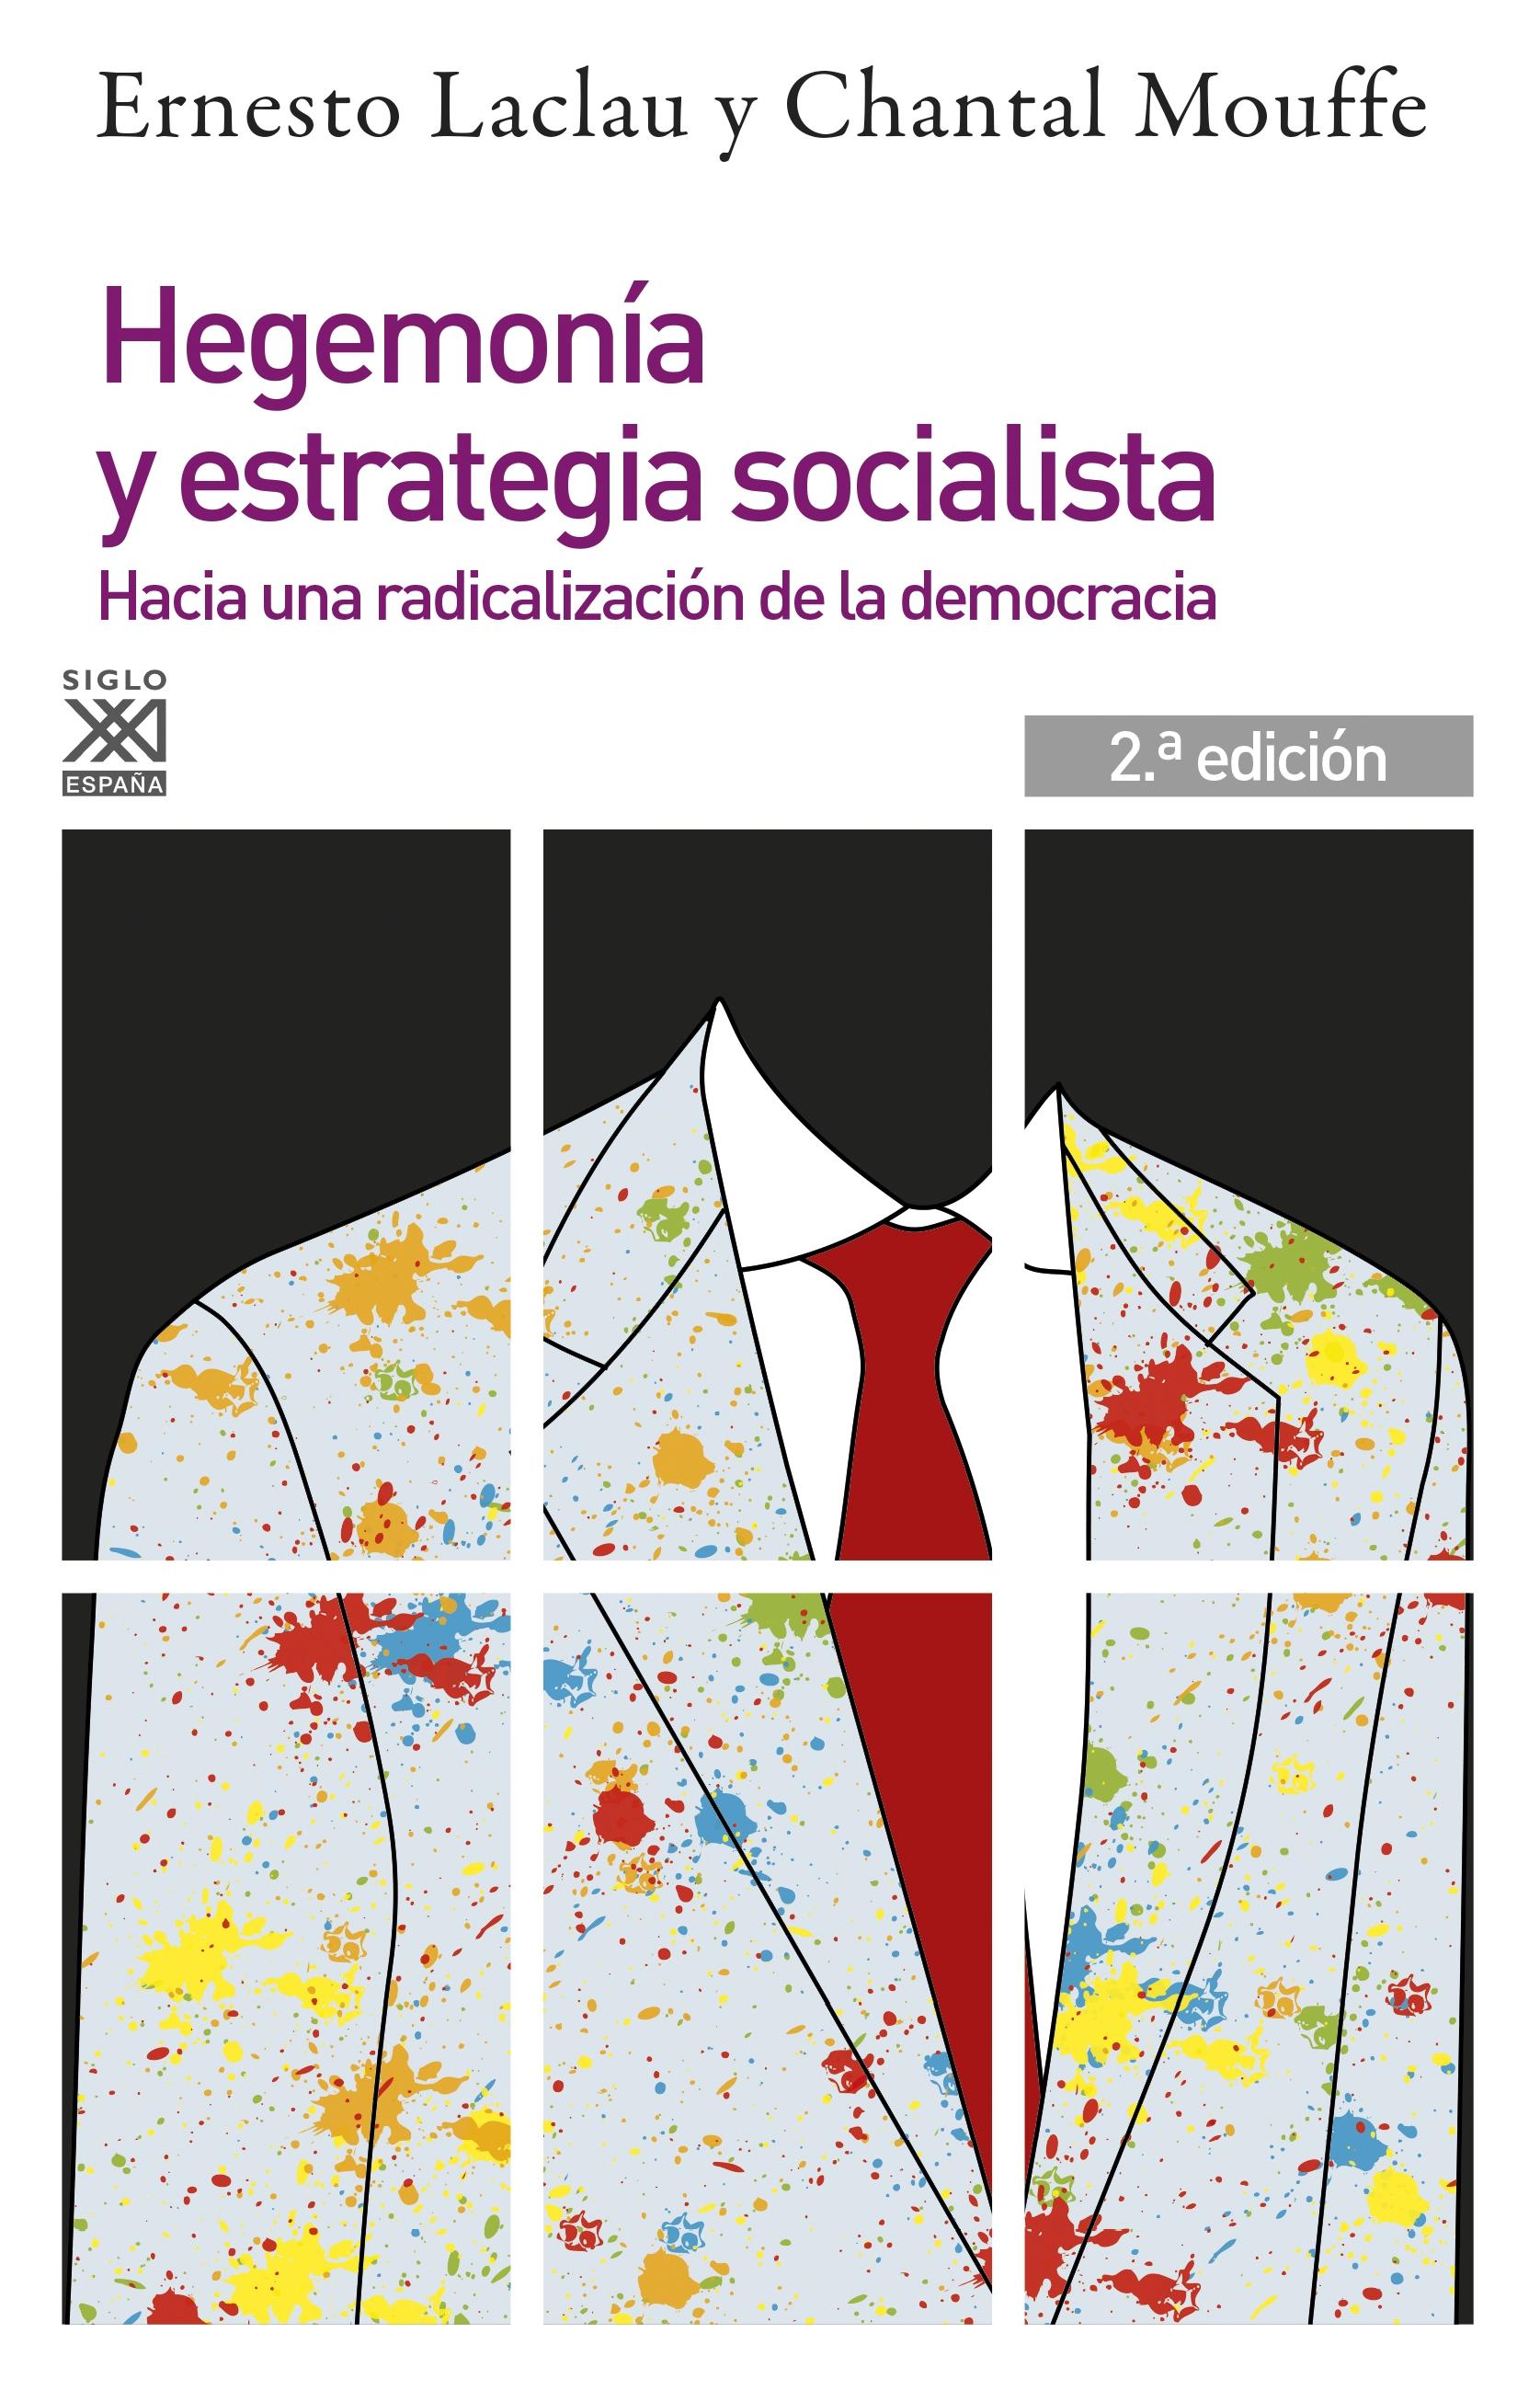 Hegemonia y estrategia socialista "Hacia una radicalización de la democracia"